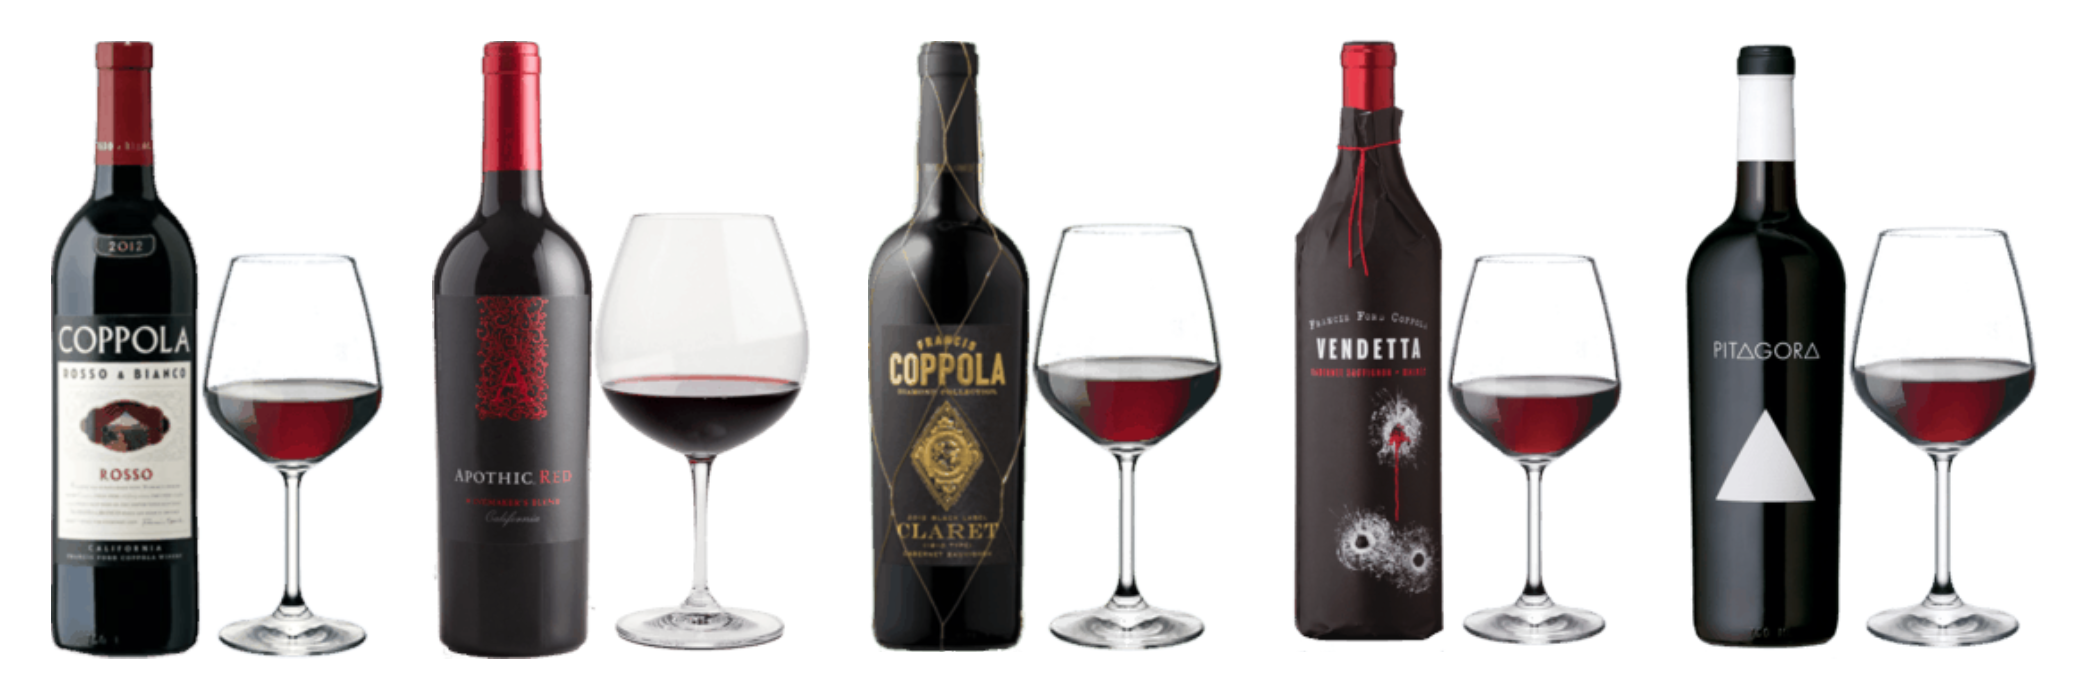 Coppola, Apothic, Vendetta, Pitagora red wines in a row